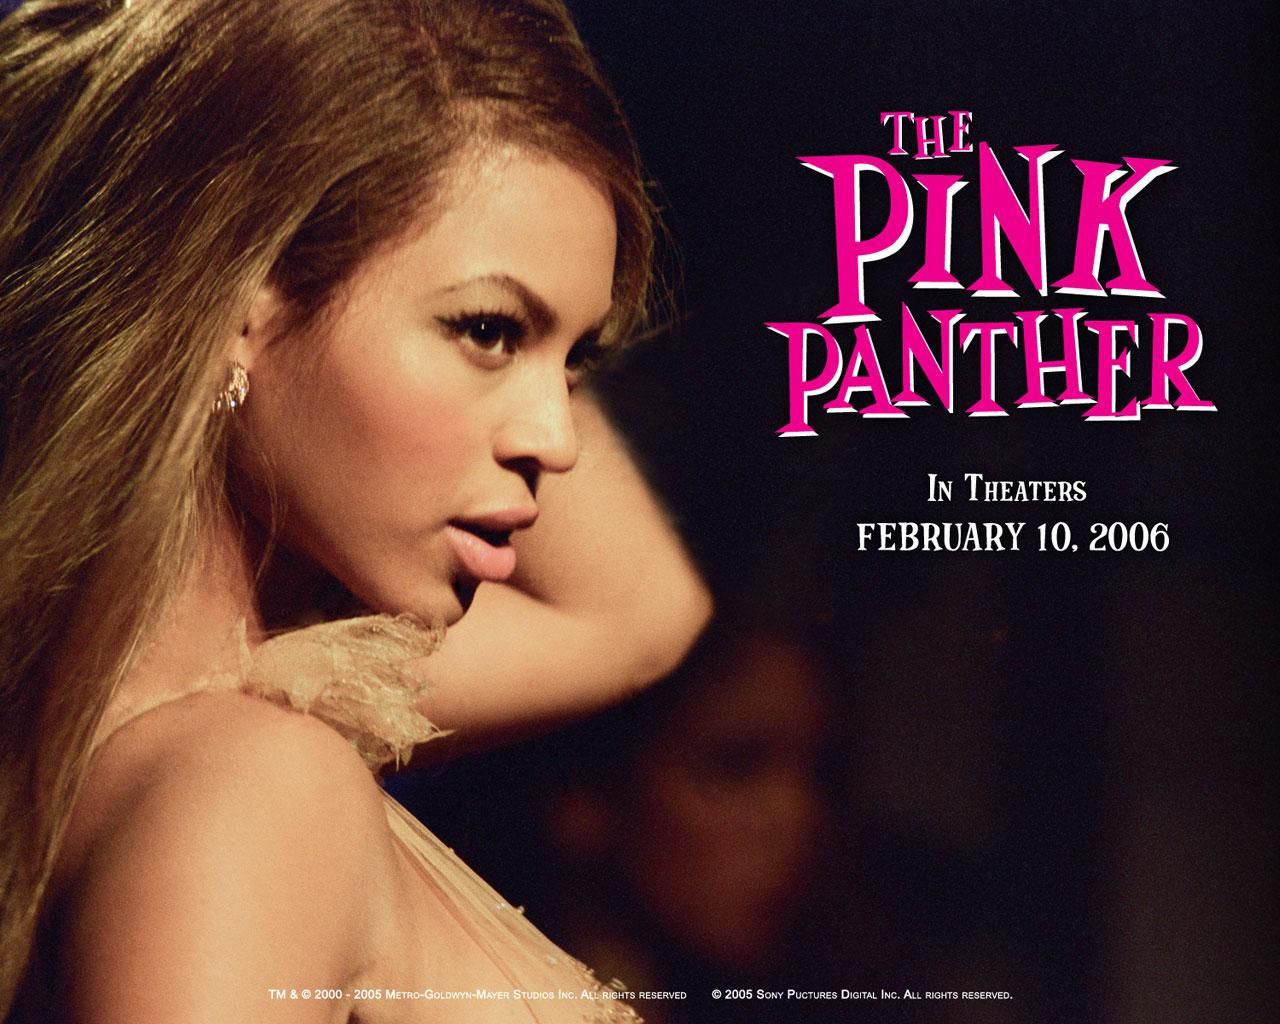 Фильм Розовая пантера | Pink Panther - лучшие обои для рабочего стола